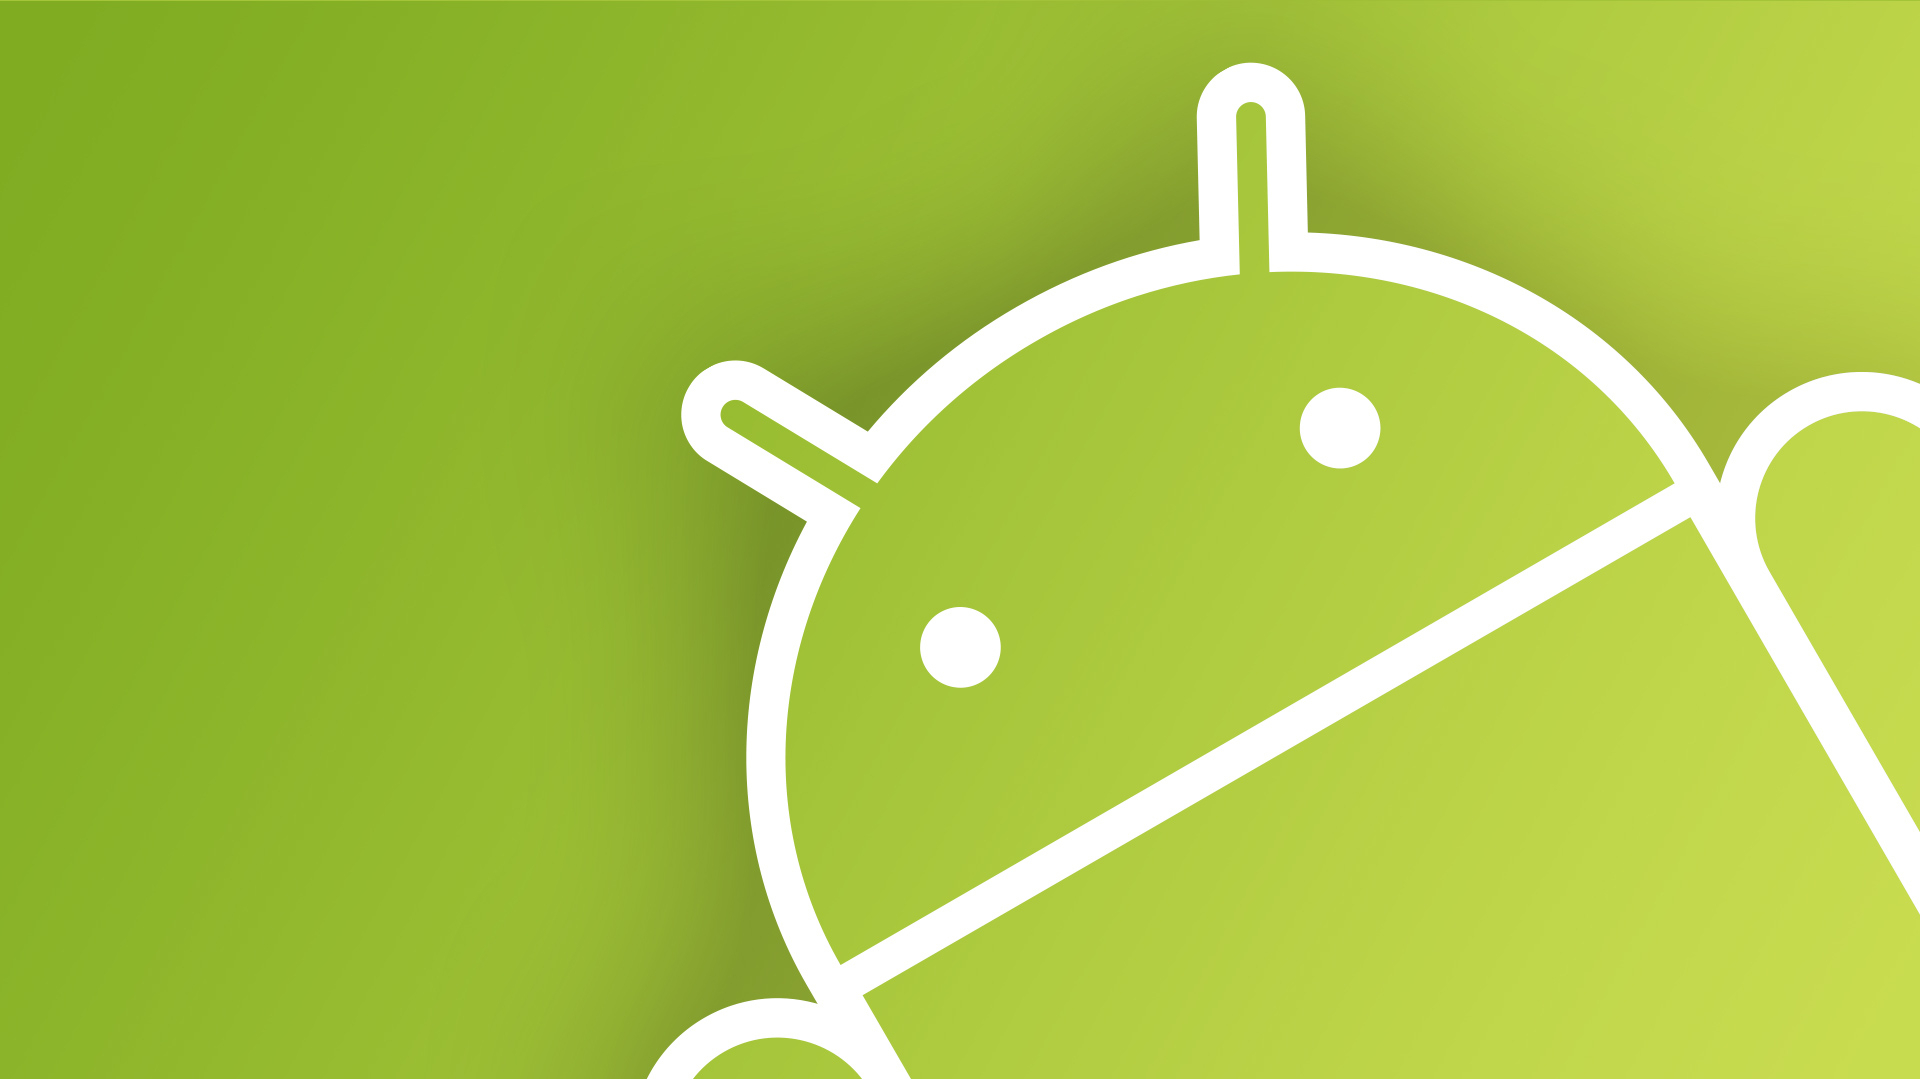 Android neu installieren - so klappt's | heise online